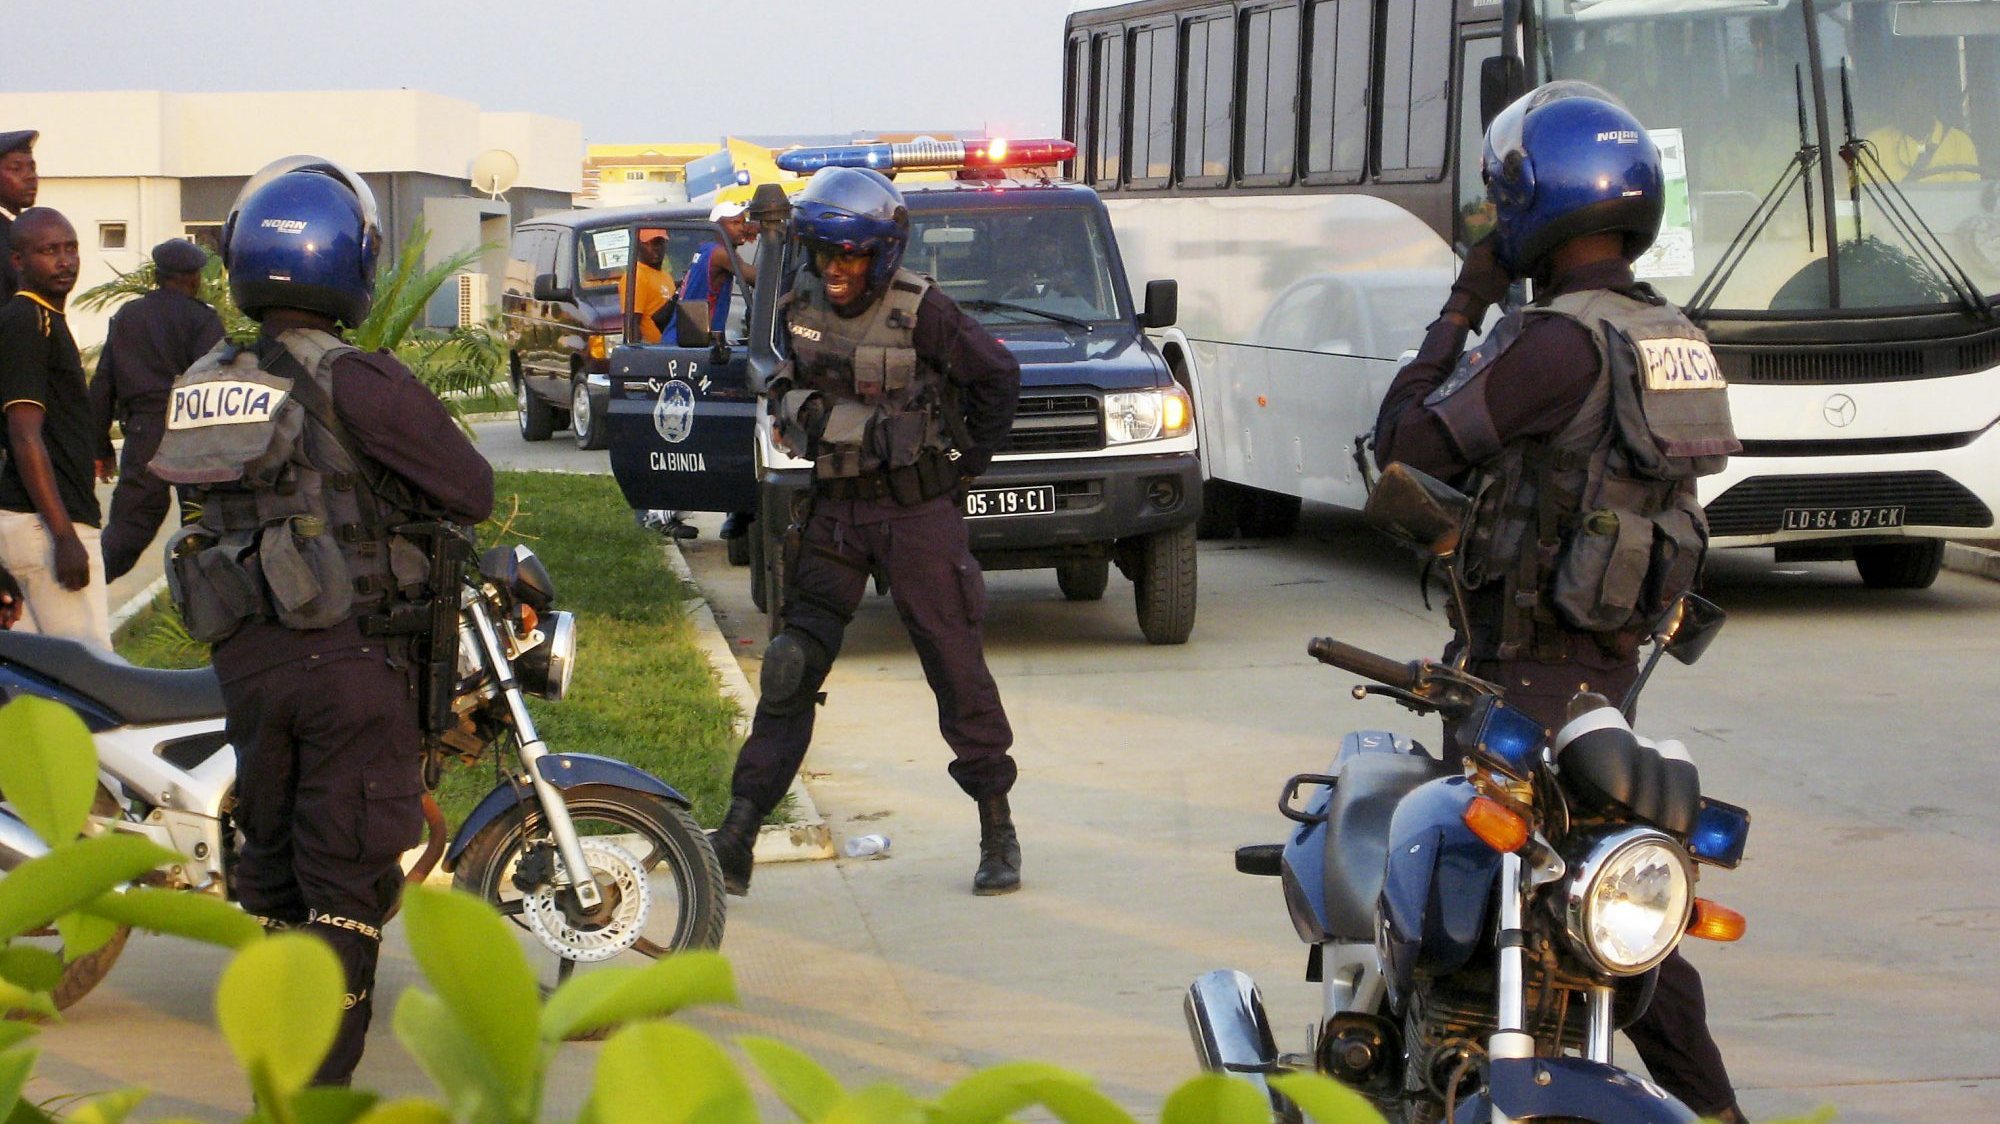 Segundo a FLEC, os confrontos aconteceram na manhã desta segunda feira no município do Belize, norte de Angola.